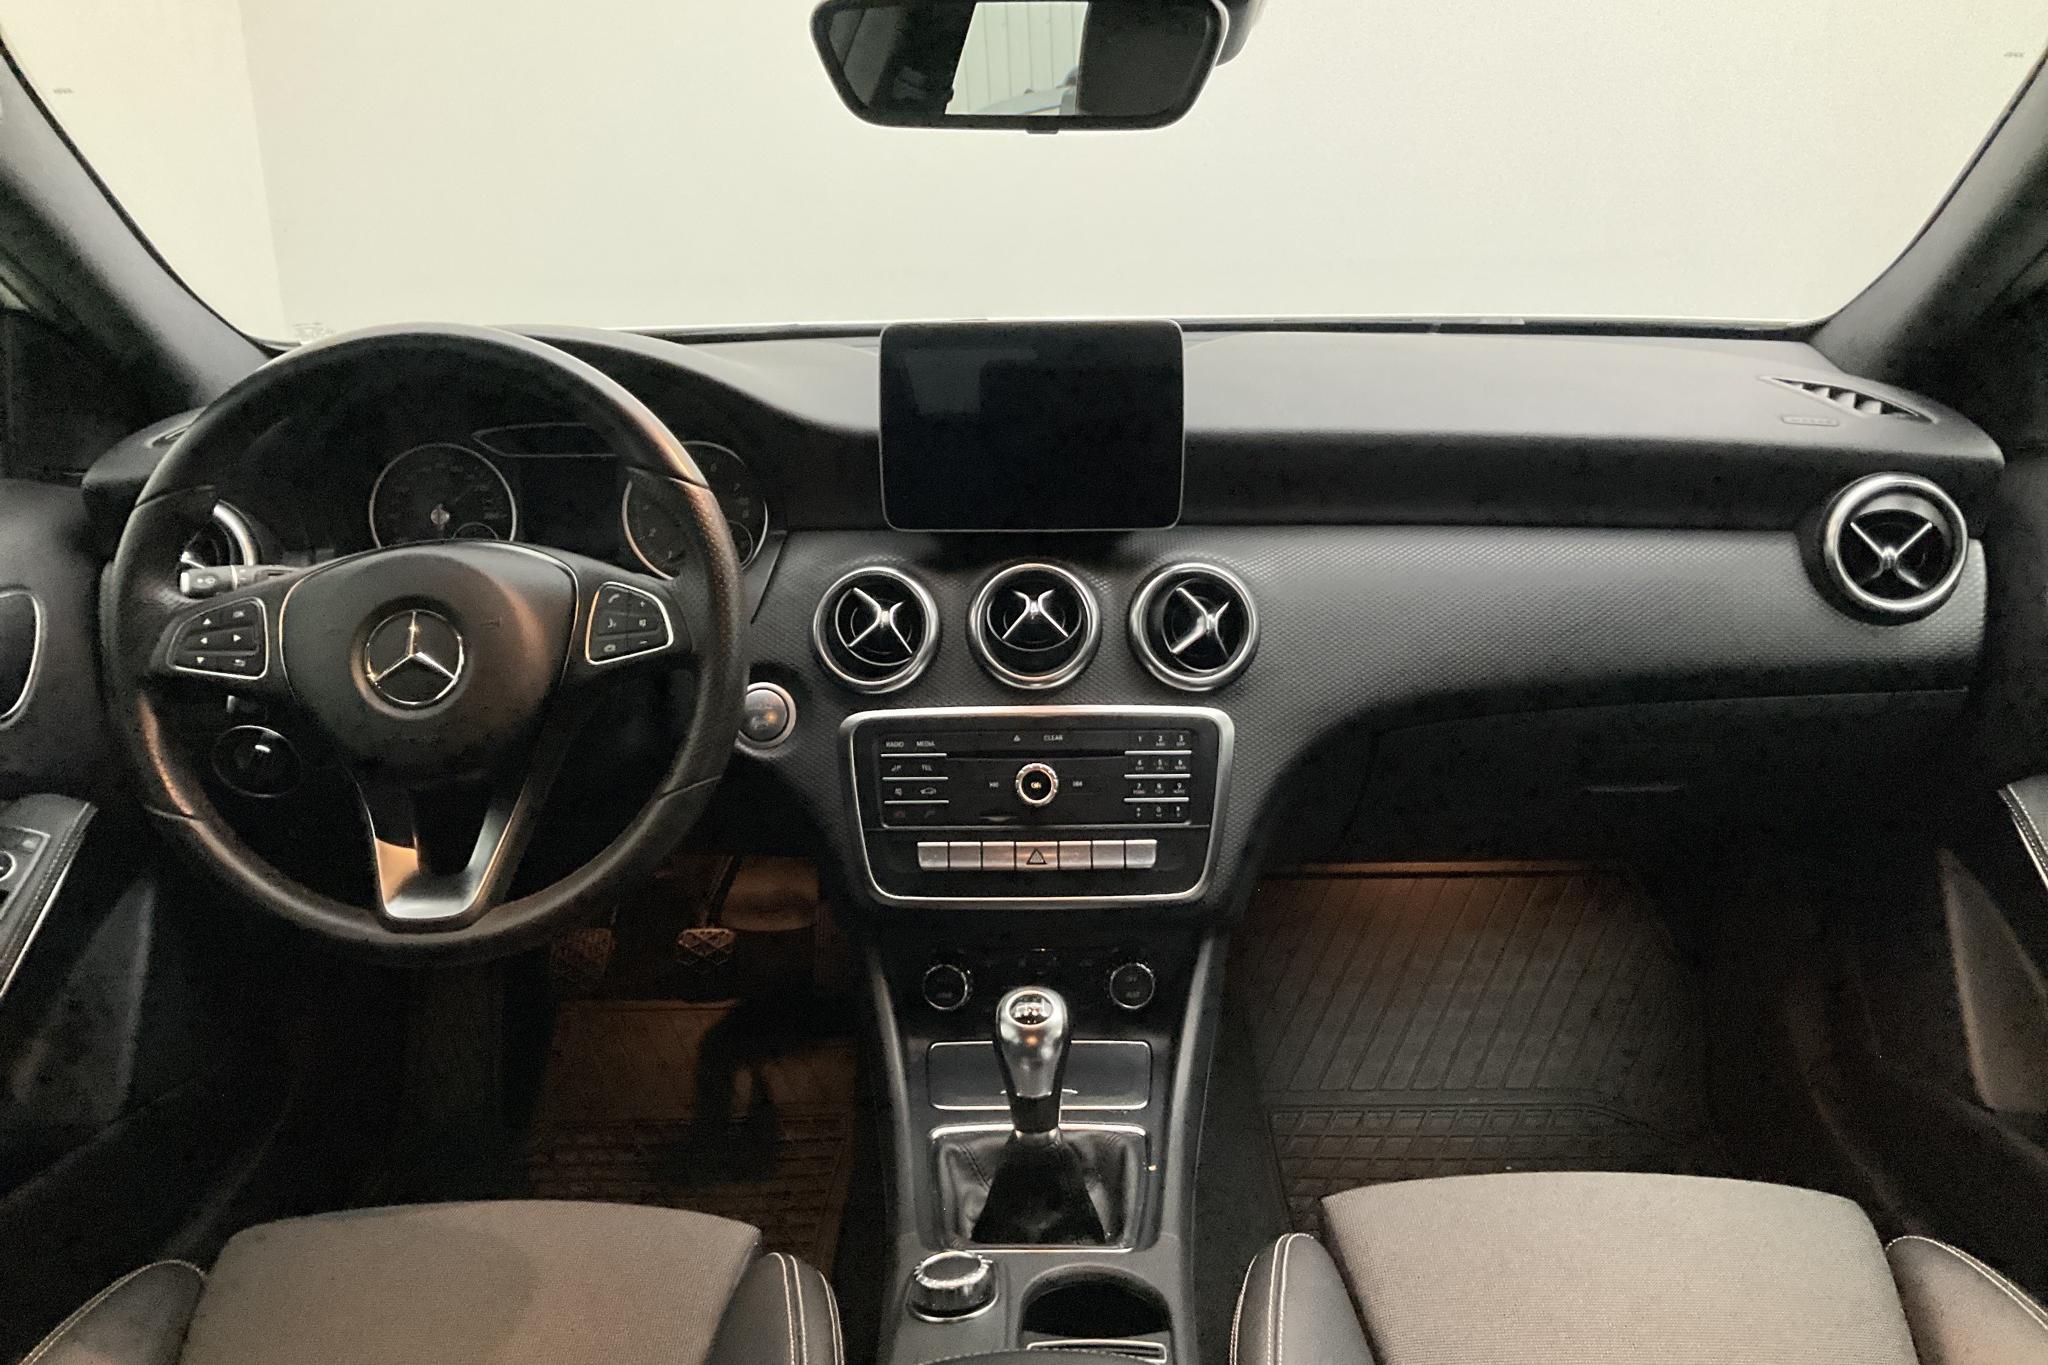 Mercedes A 180 5dr W176 (122hk) - 53 500 km - Manual - white - 2018